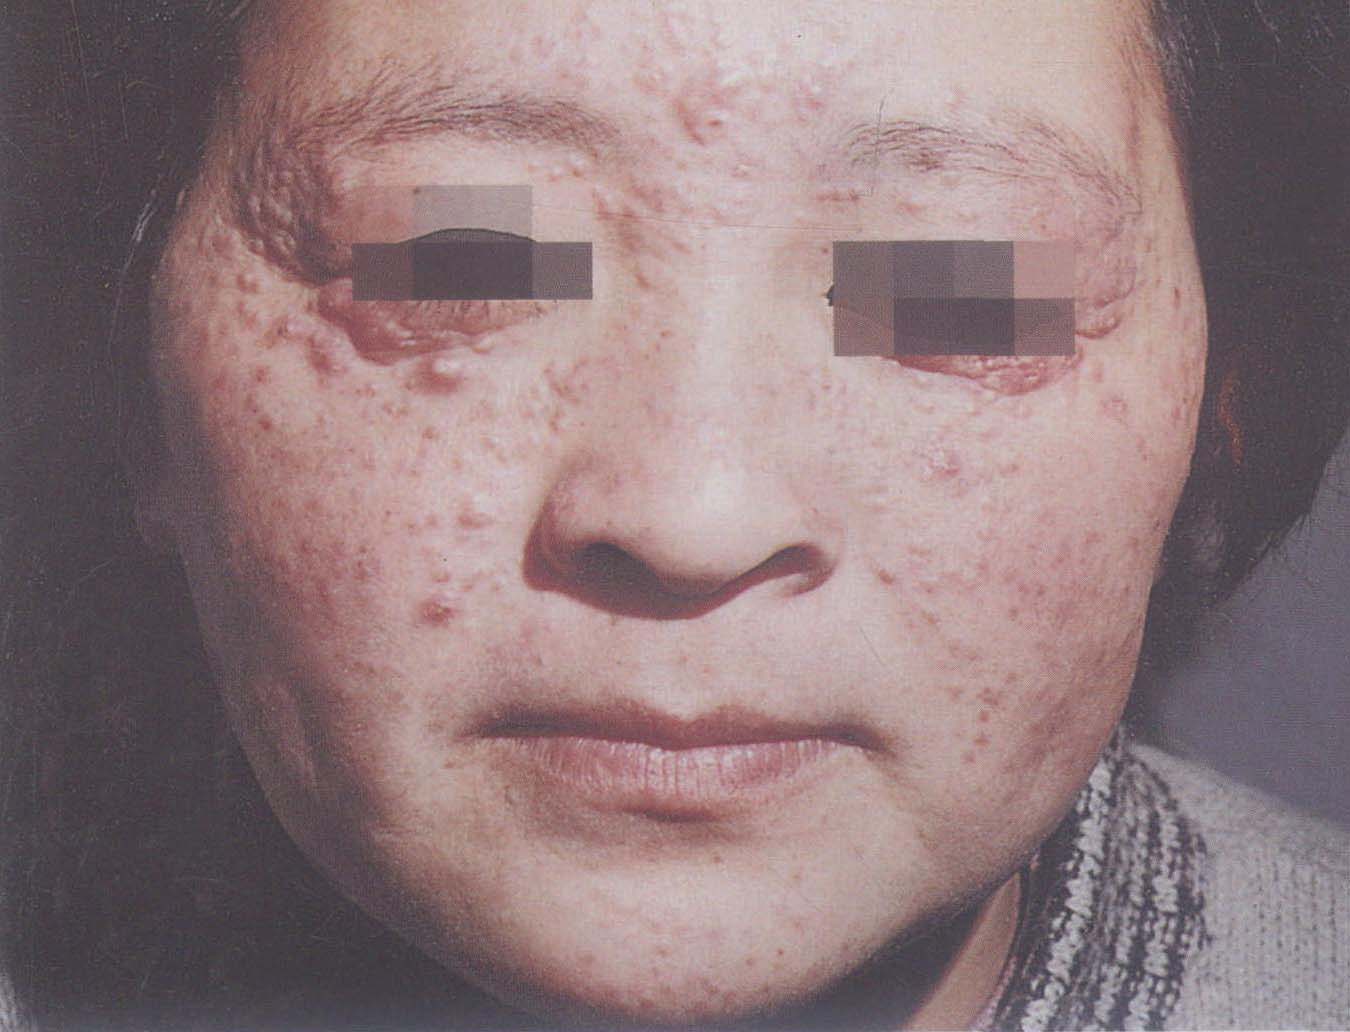 脸上红斑狼疮早期图片,脸上红斑是什么原因(4) - 伤感说说吧